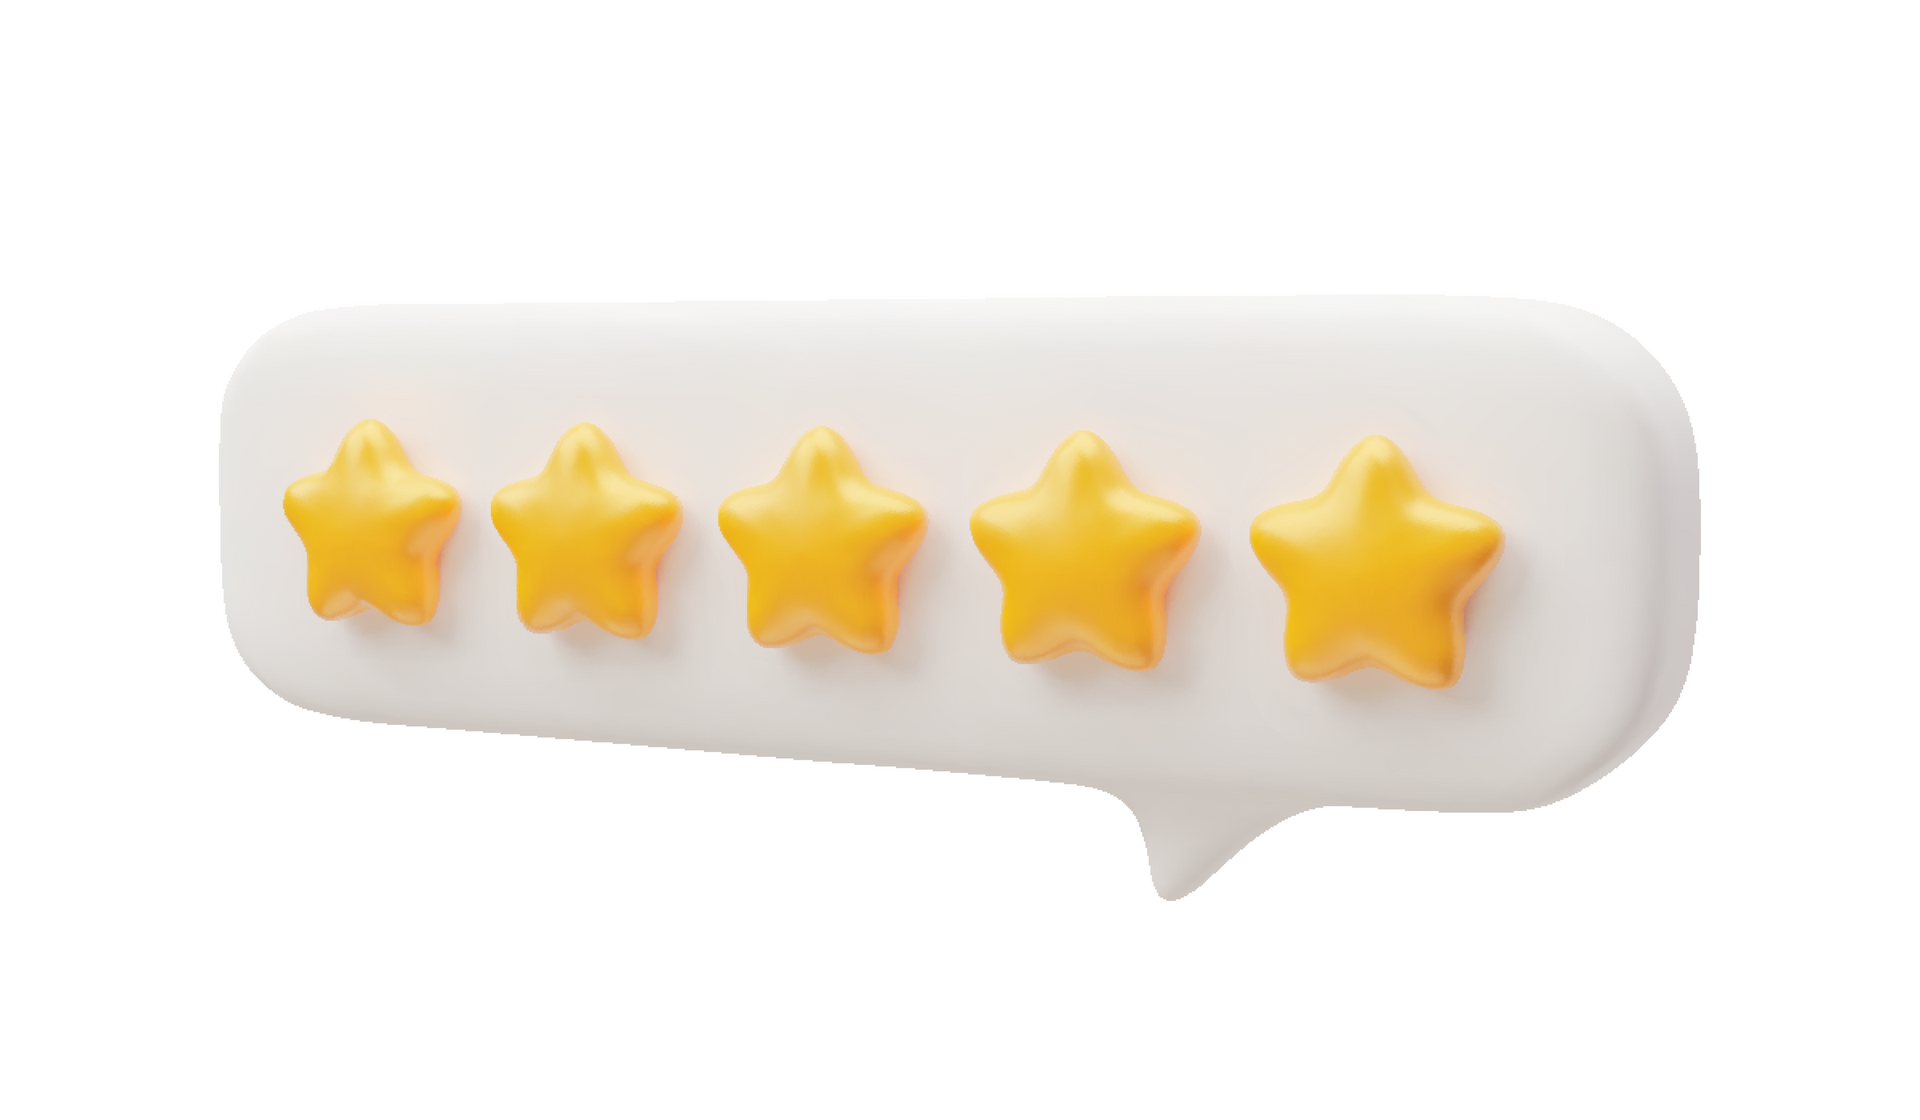 Image avec 5 étoiles jaunes qui caractérisent les avis clients